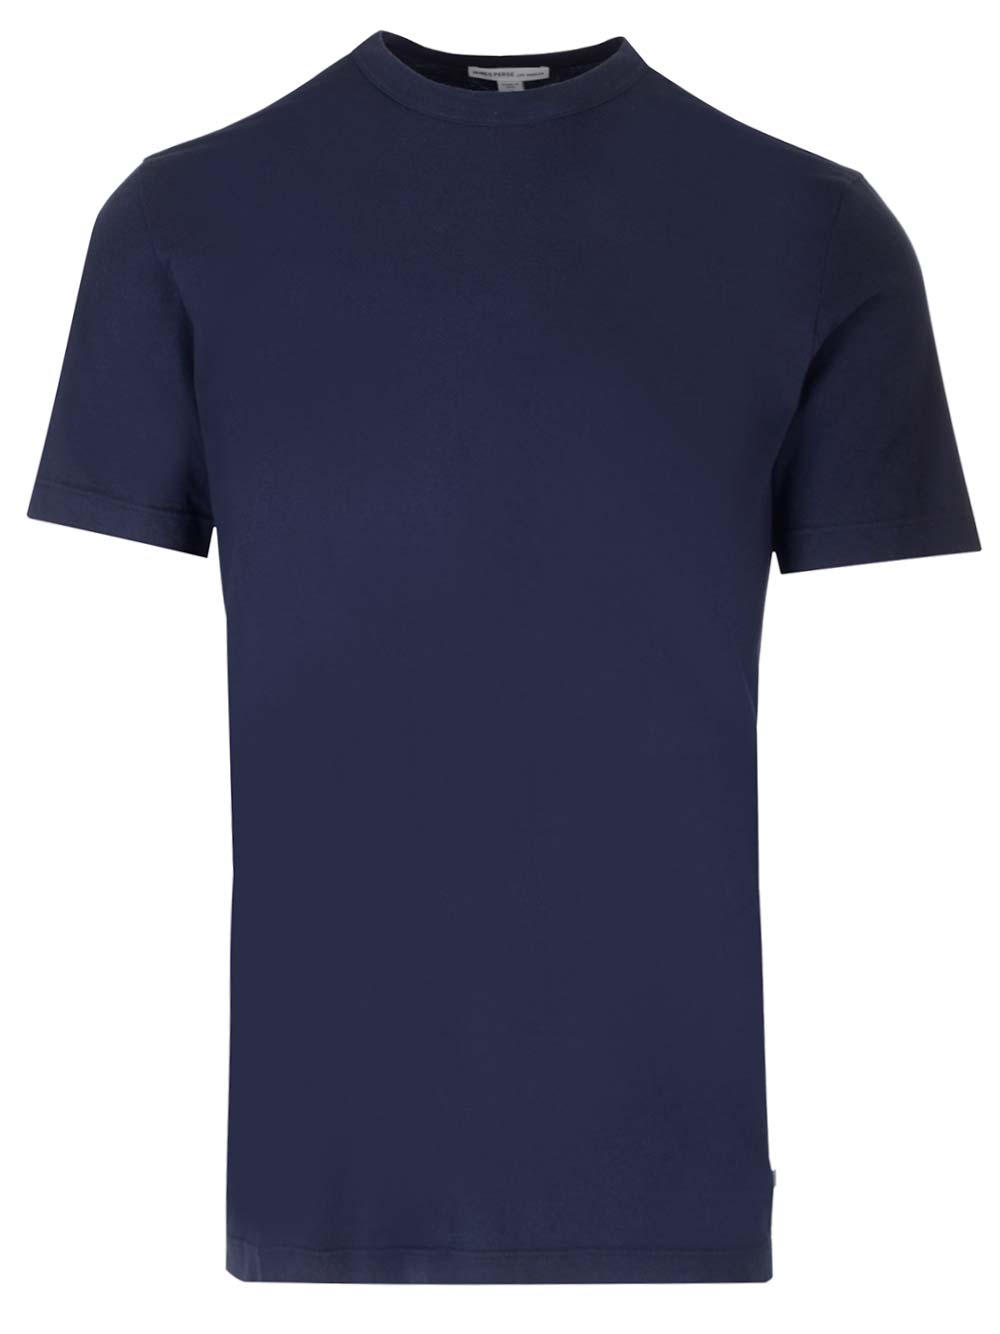 Navy Blue T-shirt